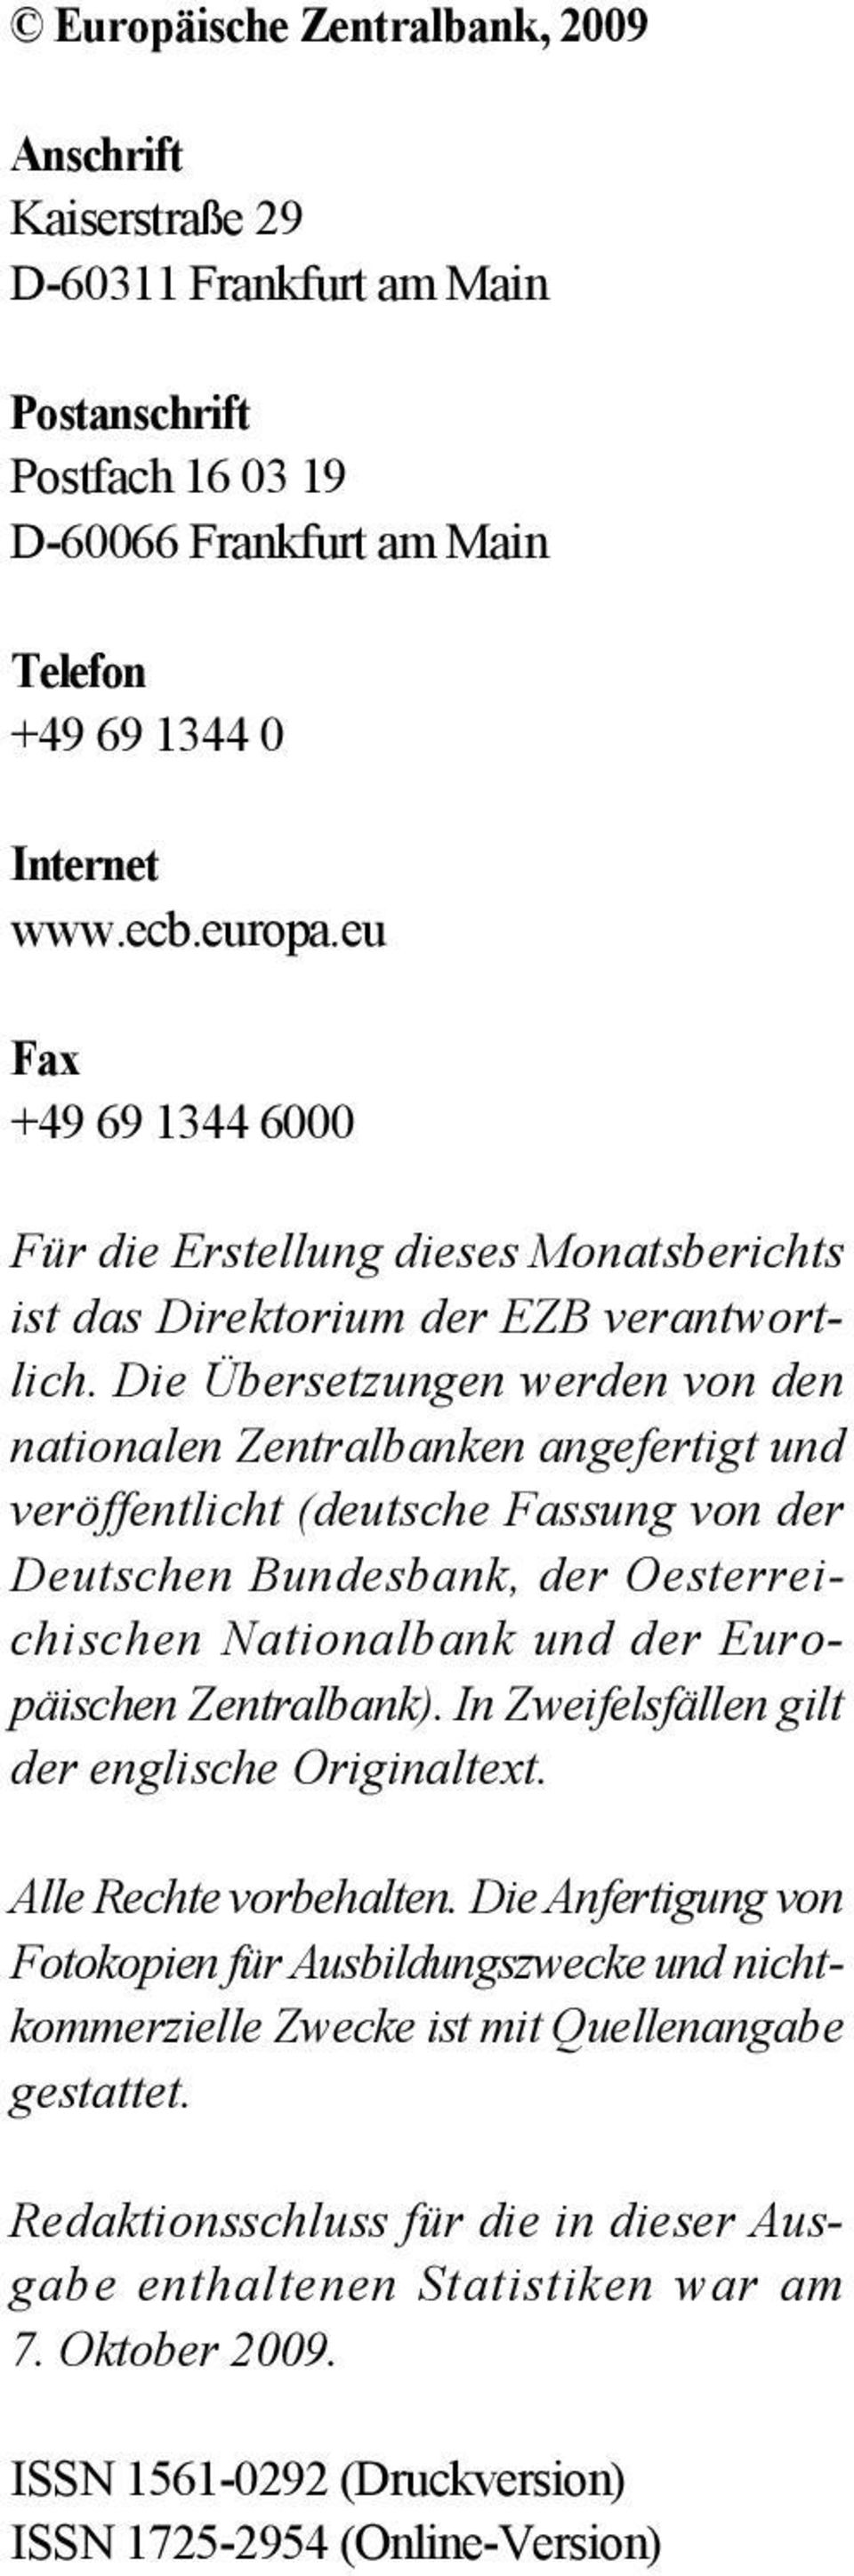 Die Übersetzungen werden von den nationalen Zentralbanken angefertigt und veröffentlicht (deutsche Fassung von der Deutschen Bundesbank, der Oesterreichischen Nationalbank und der Europäischen